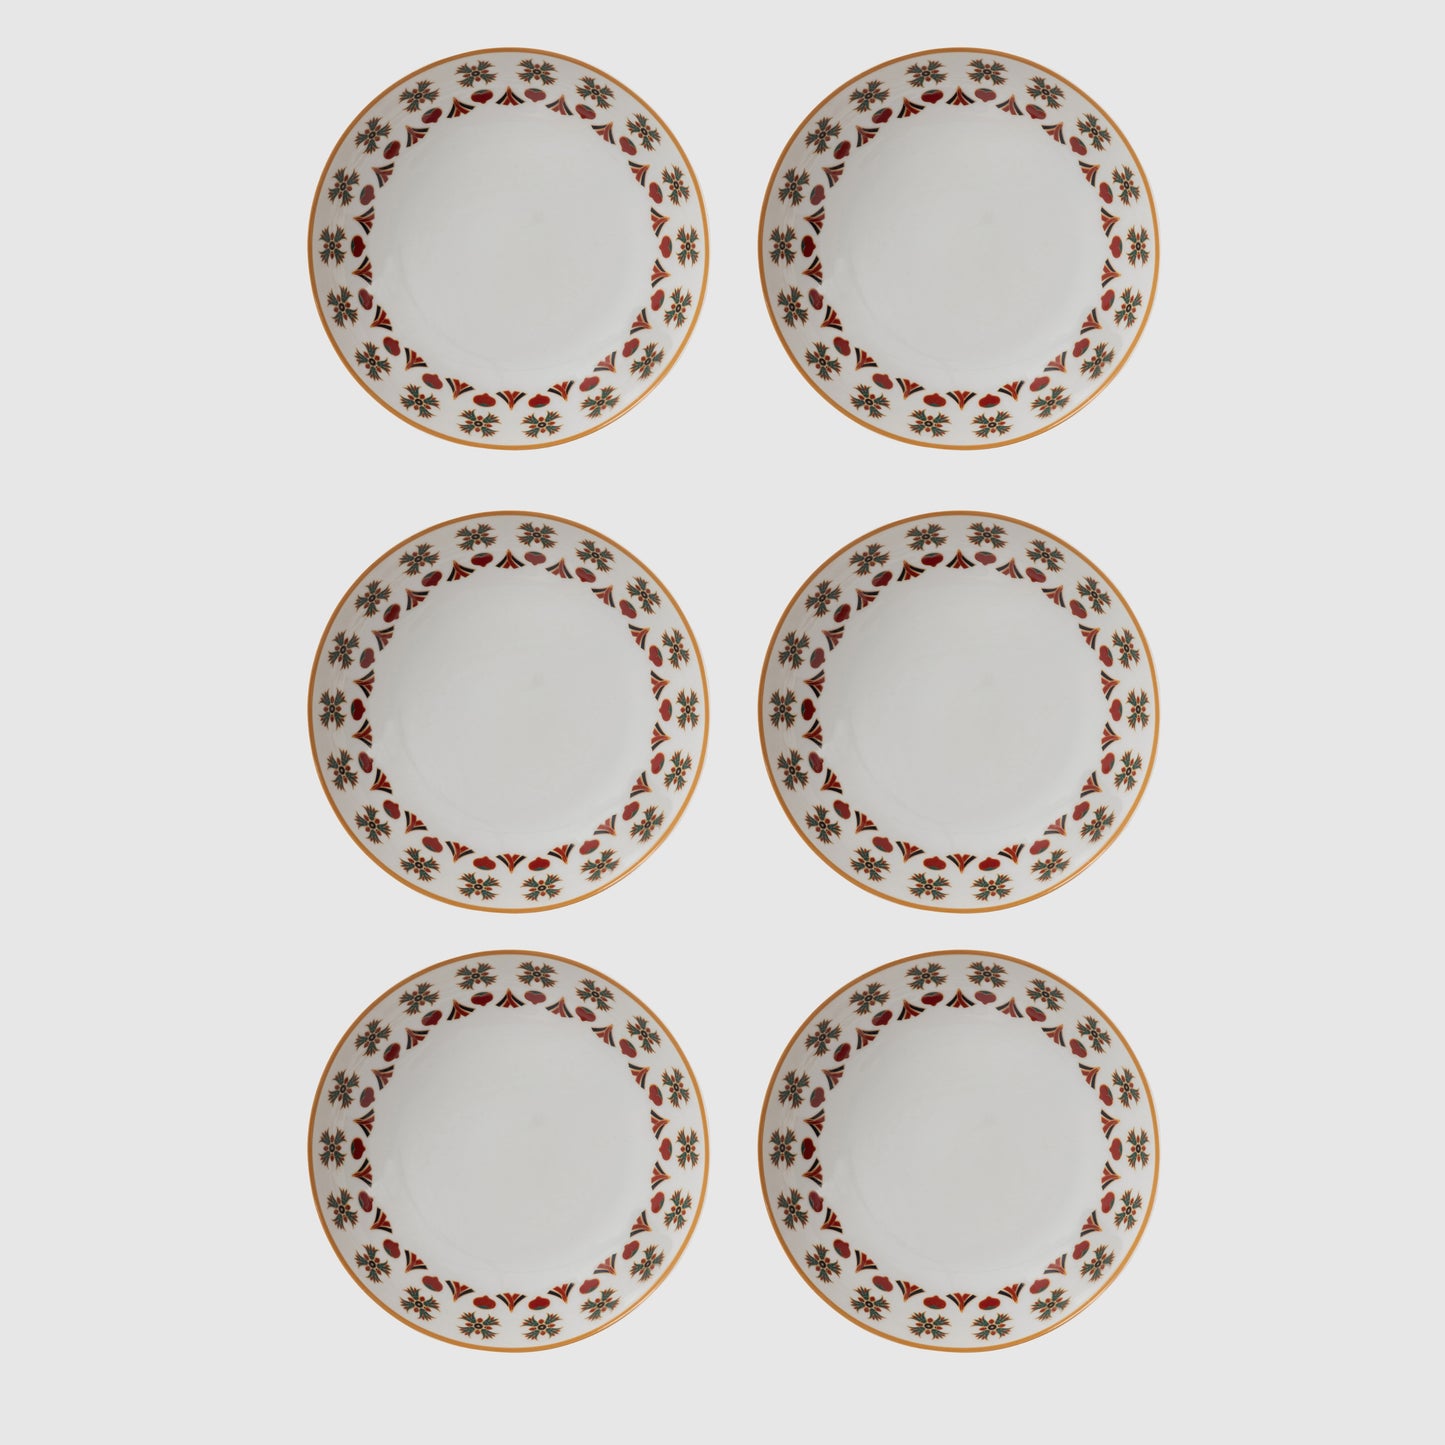 Khaldoun set of 6 Deep Plates